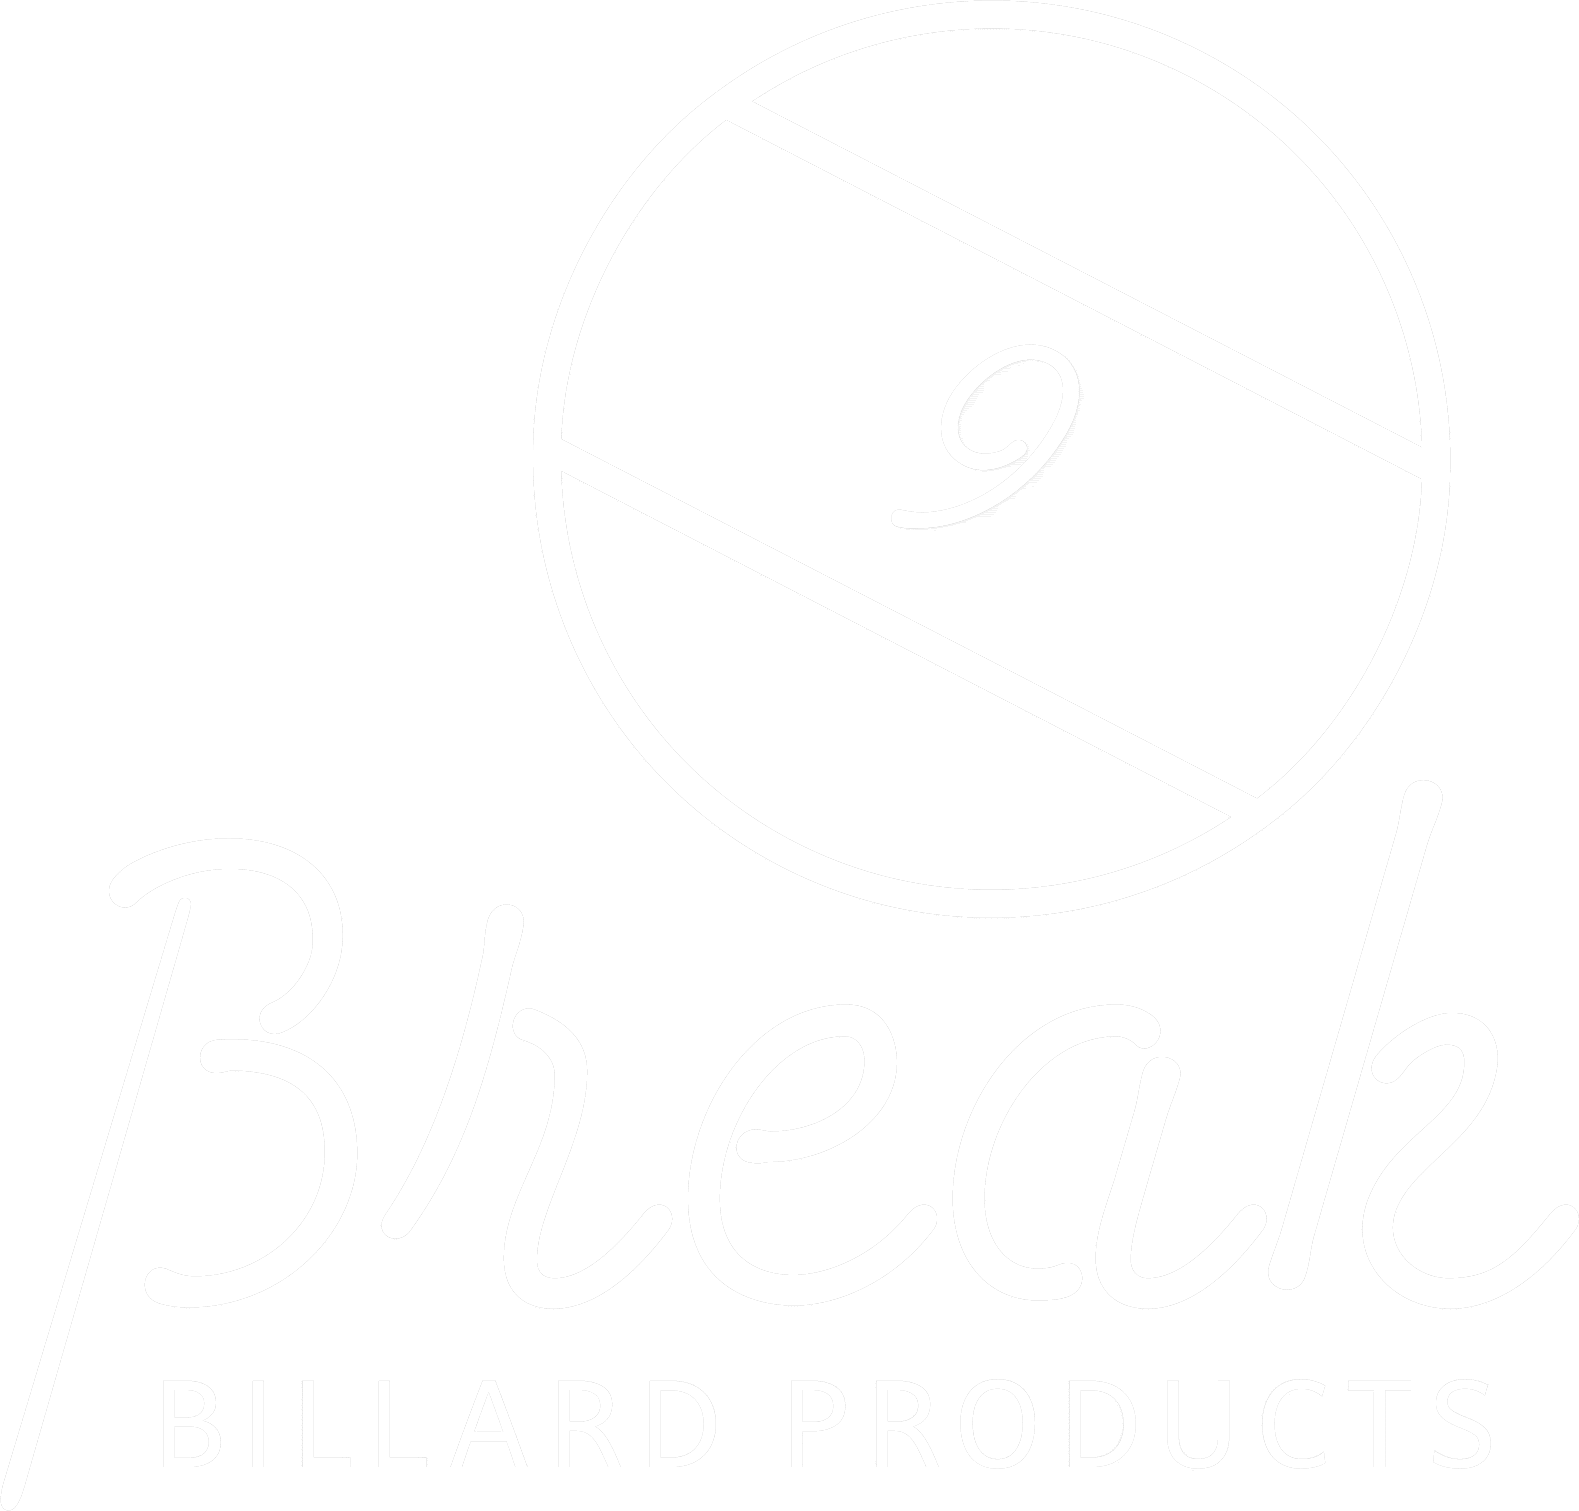 Break Billard